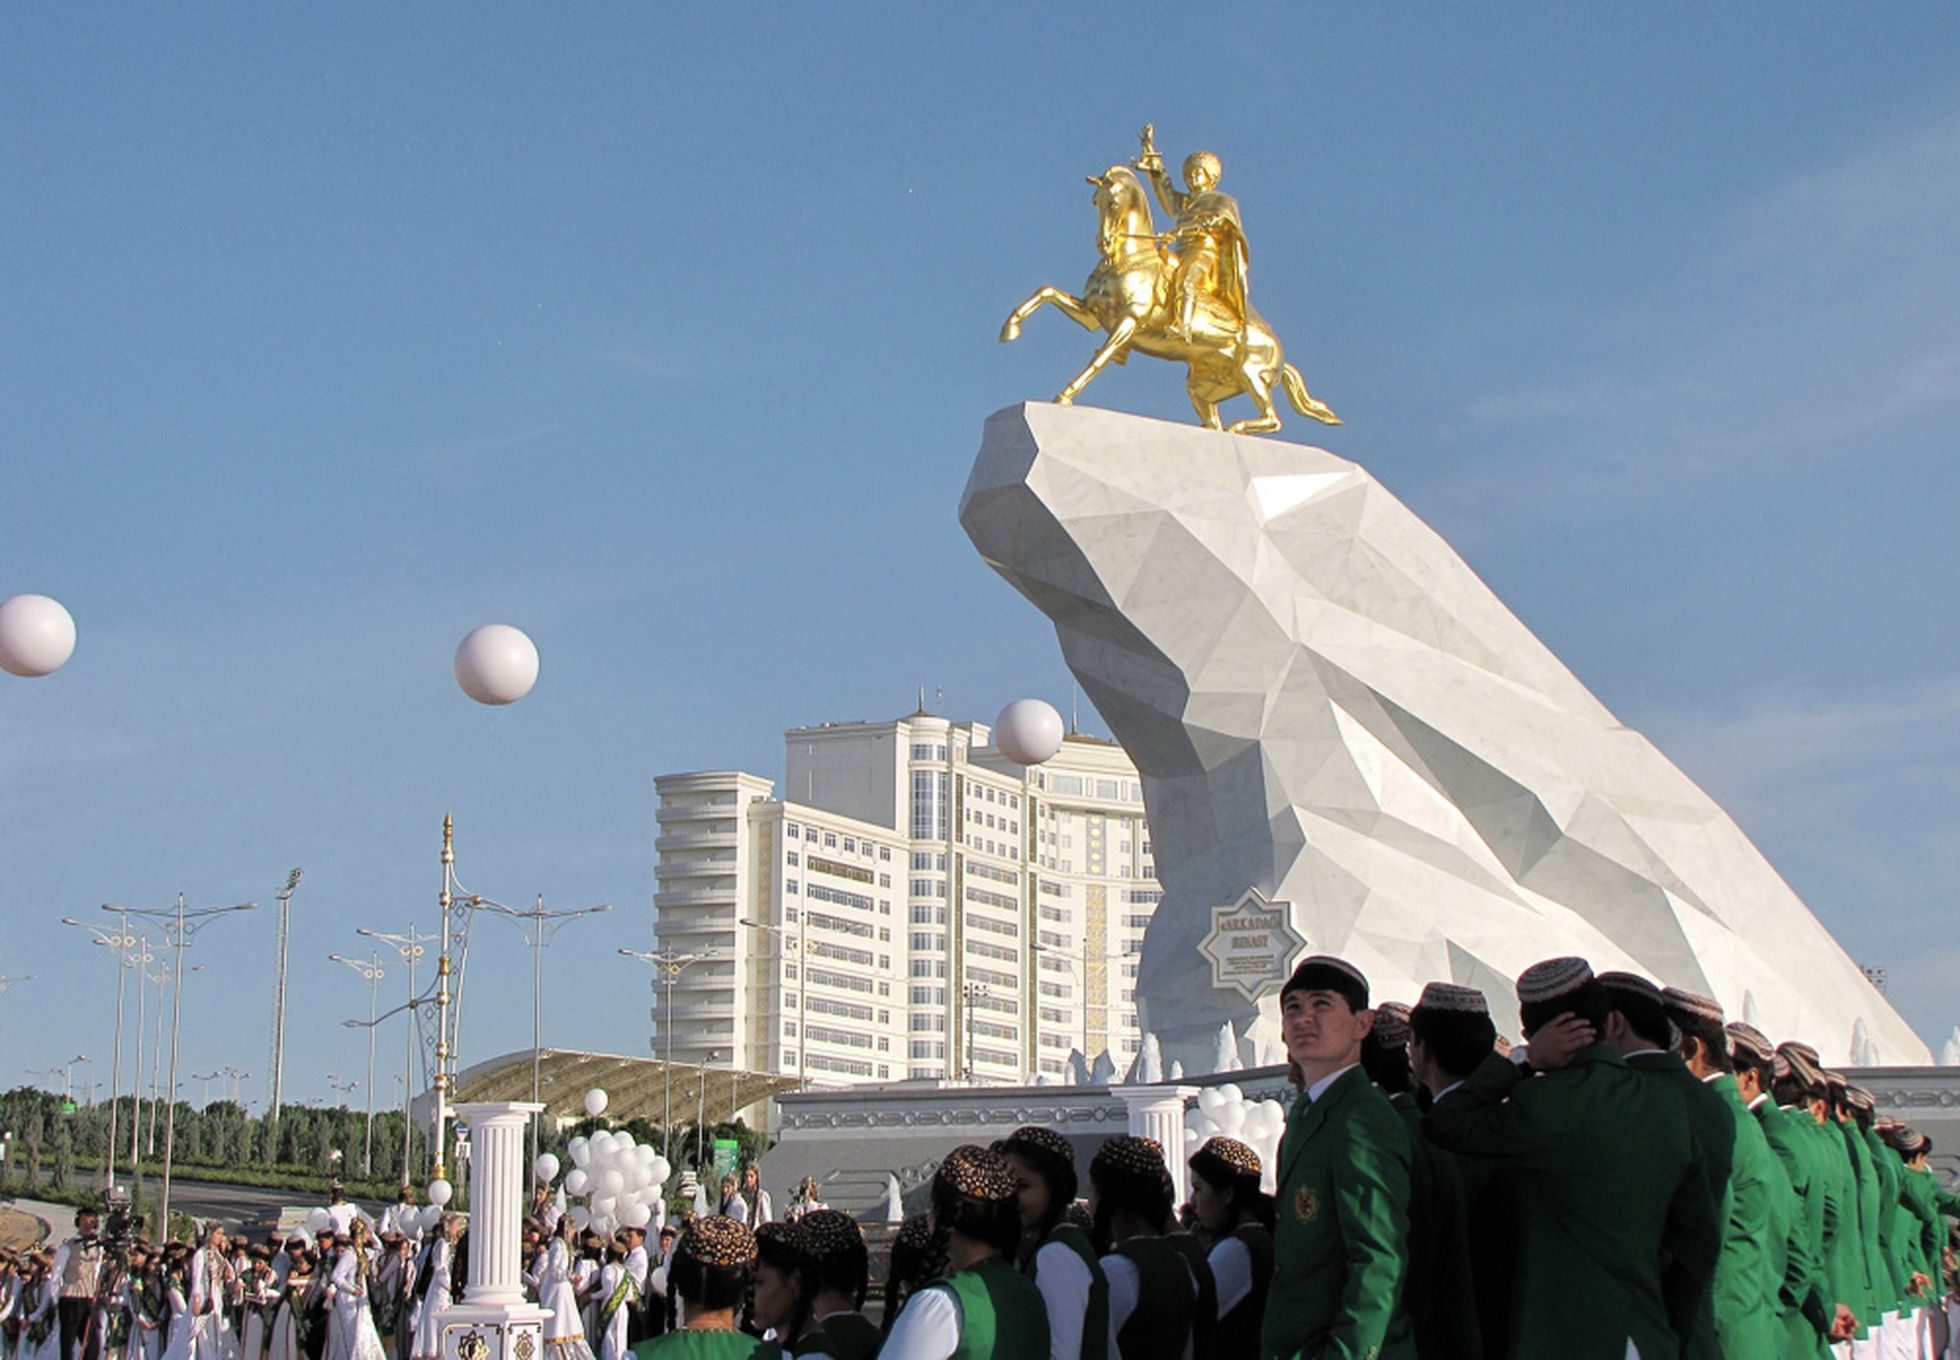 Berdimuhamedova piemineklis Ašgabatā, Turkmenistānā